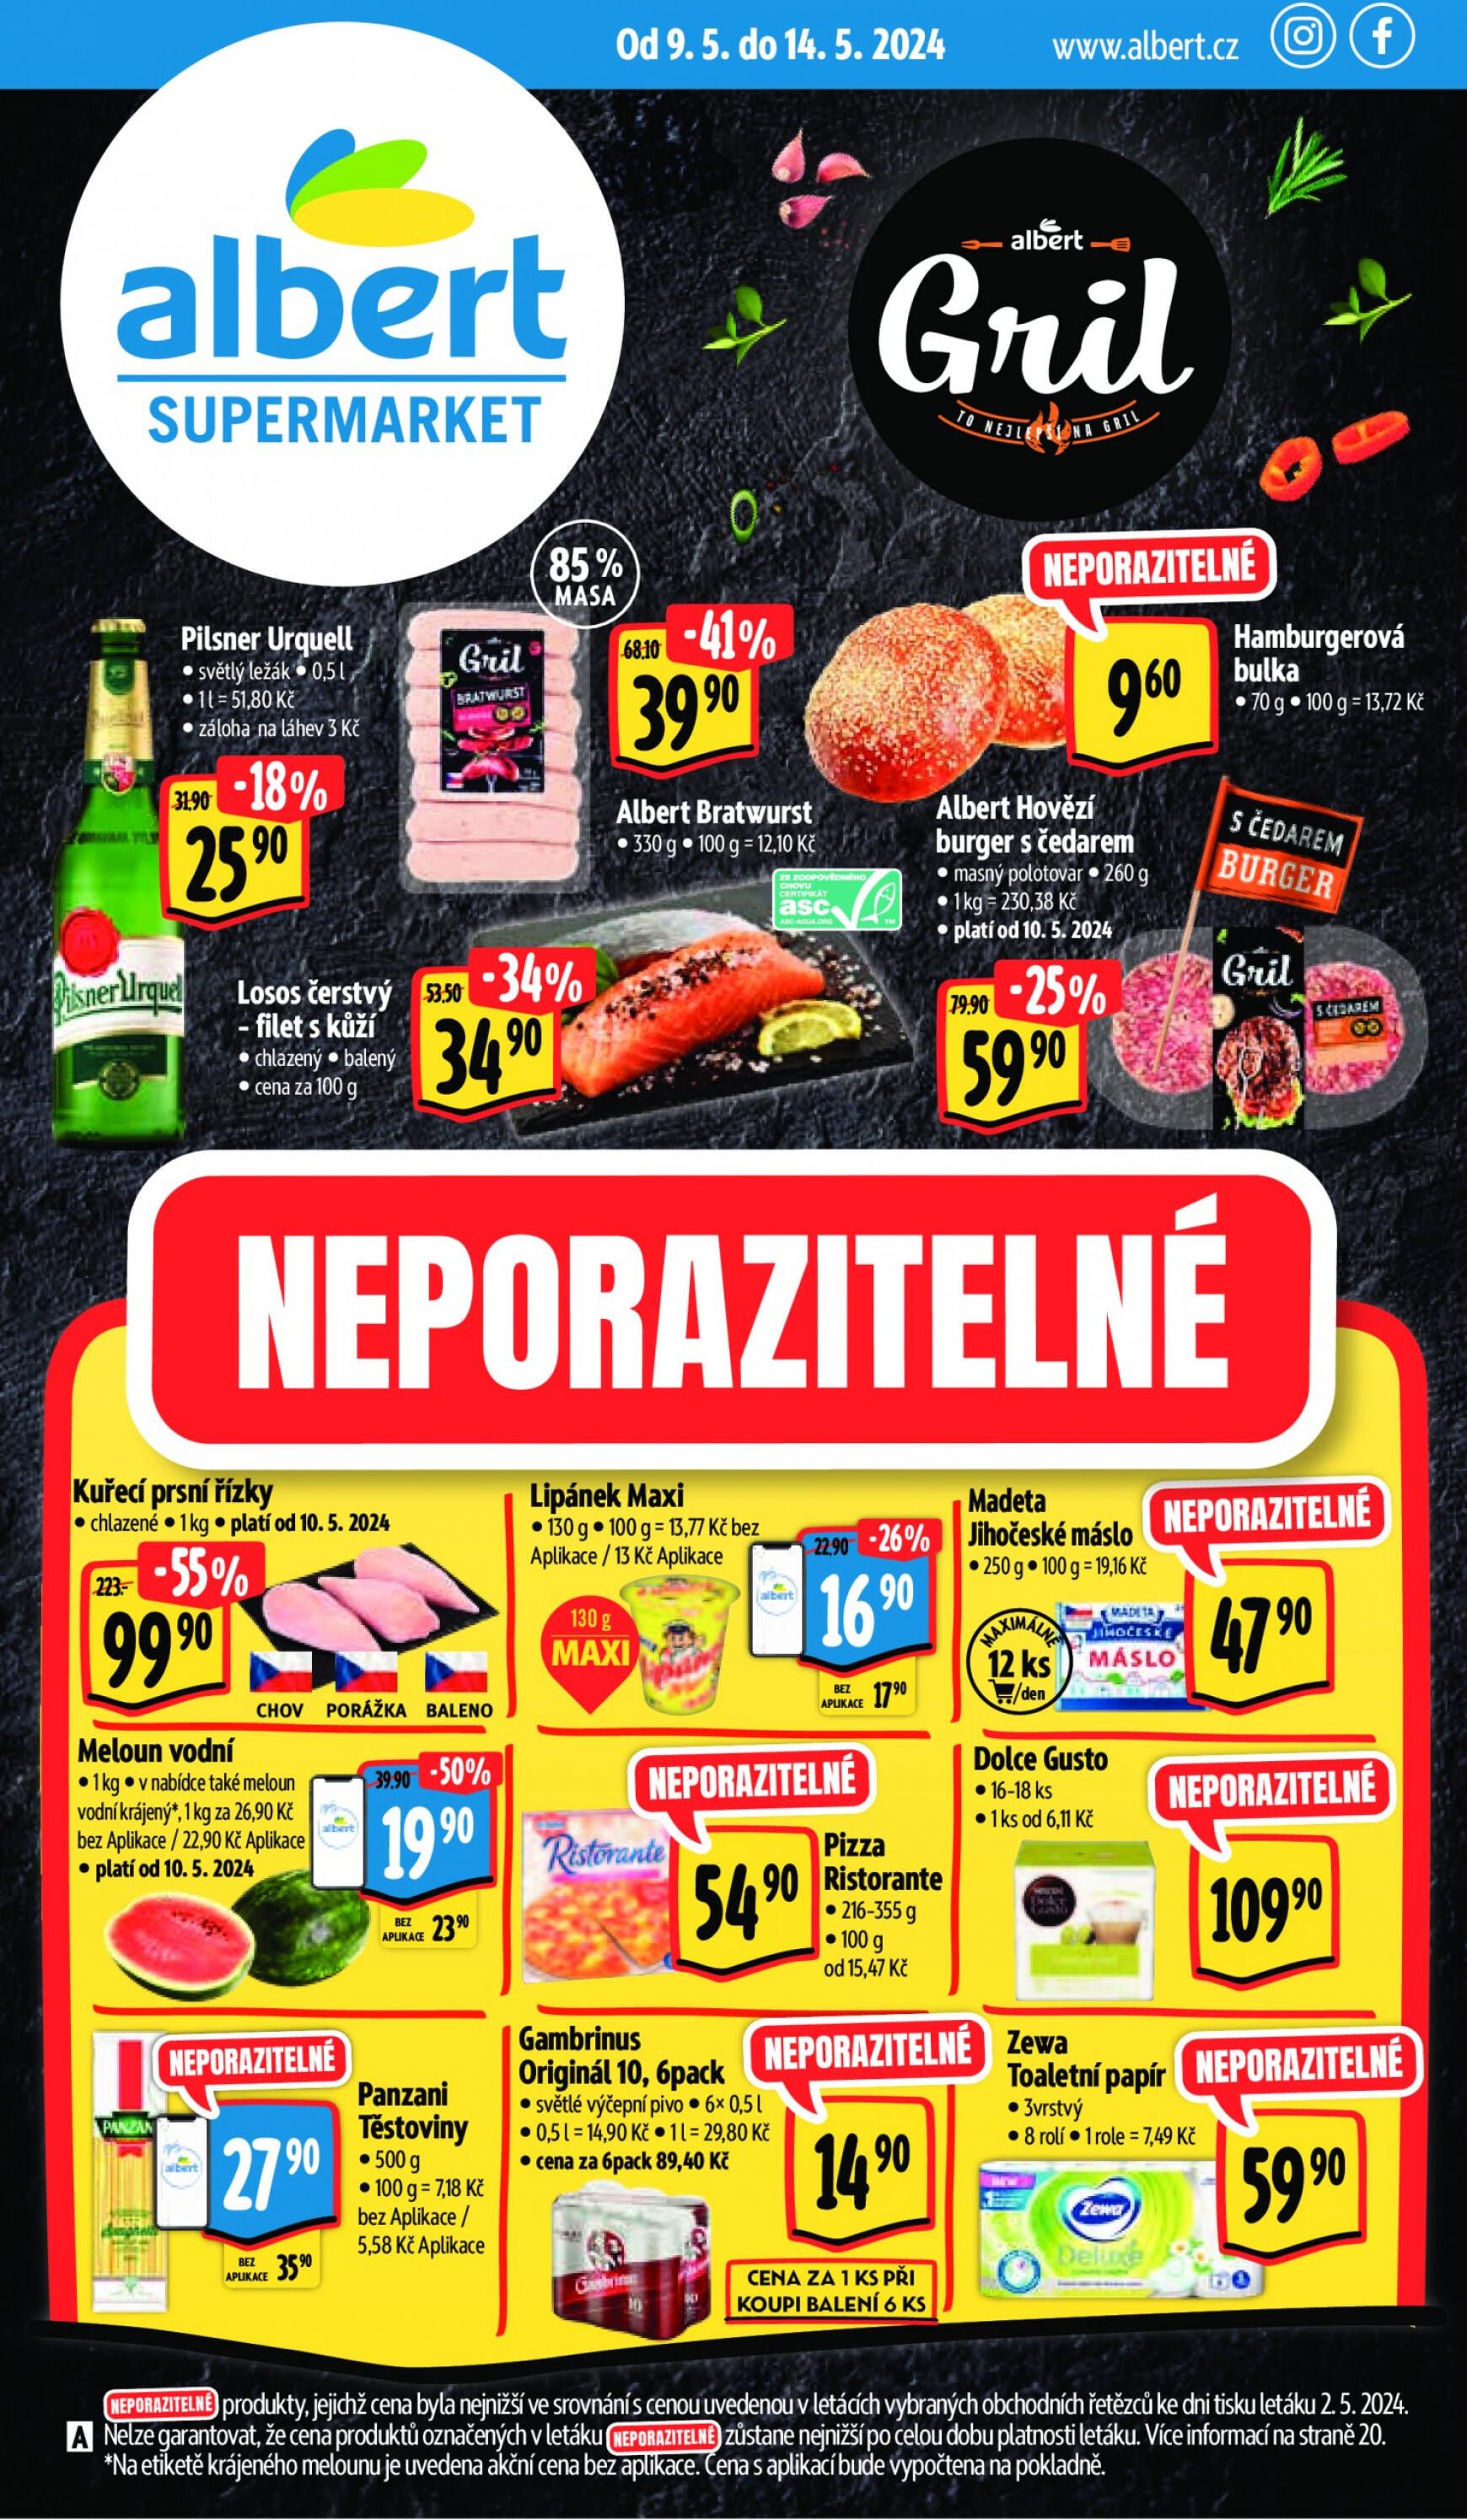 albert - Leták Albert Supermarket aktuální 09.05. - 14.05.